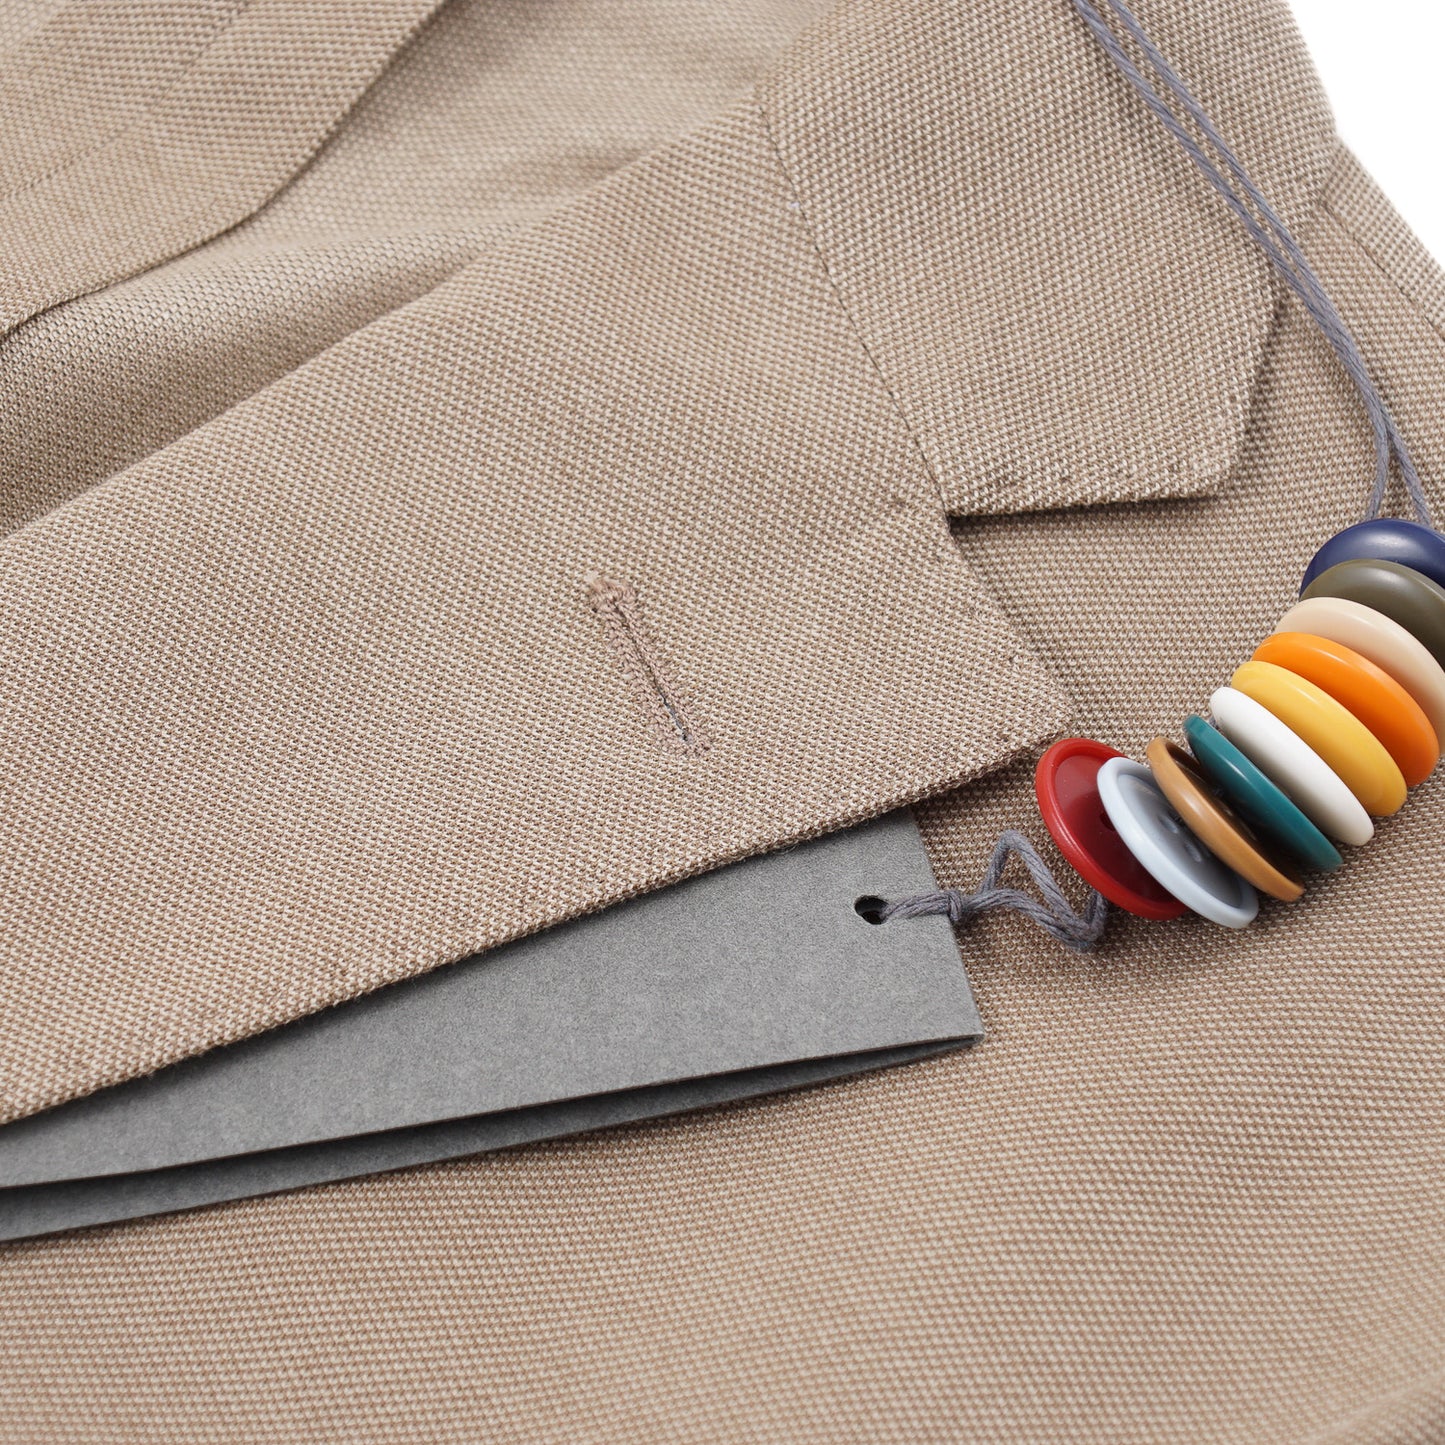 Boglioli Knit Jersey Cotton K-Jacket - Top Shelf Apparel